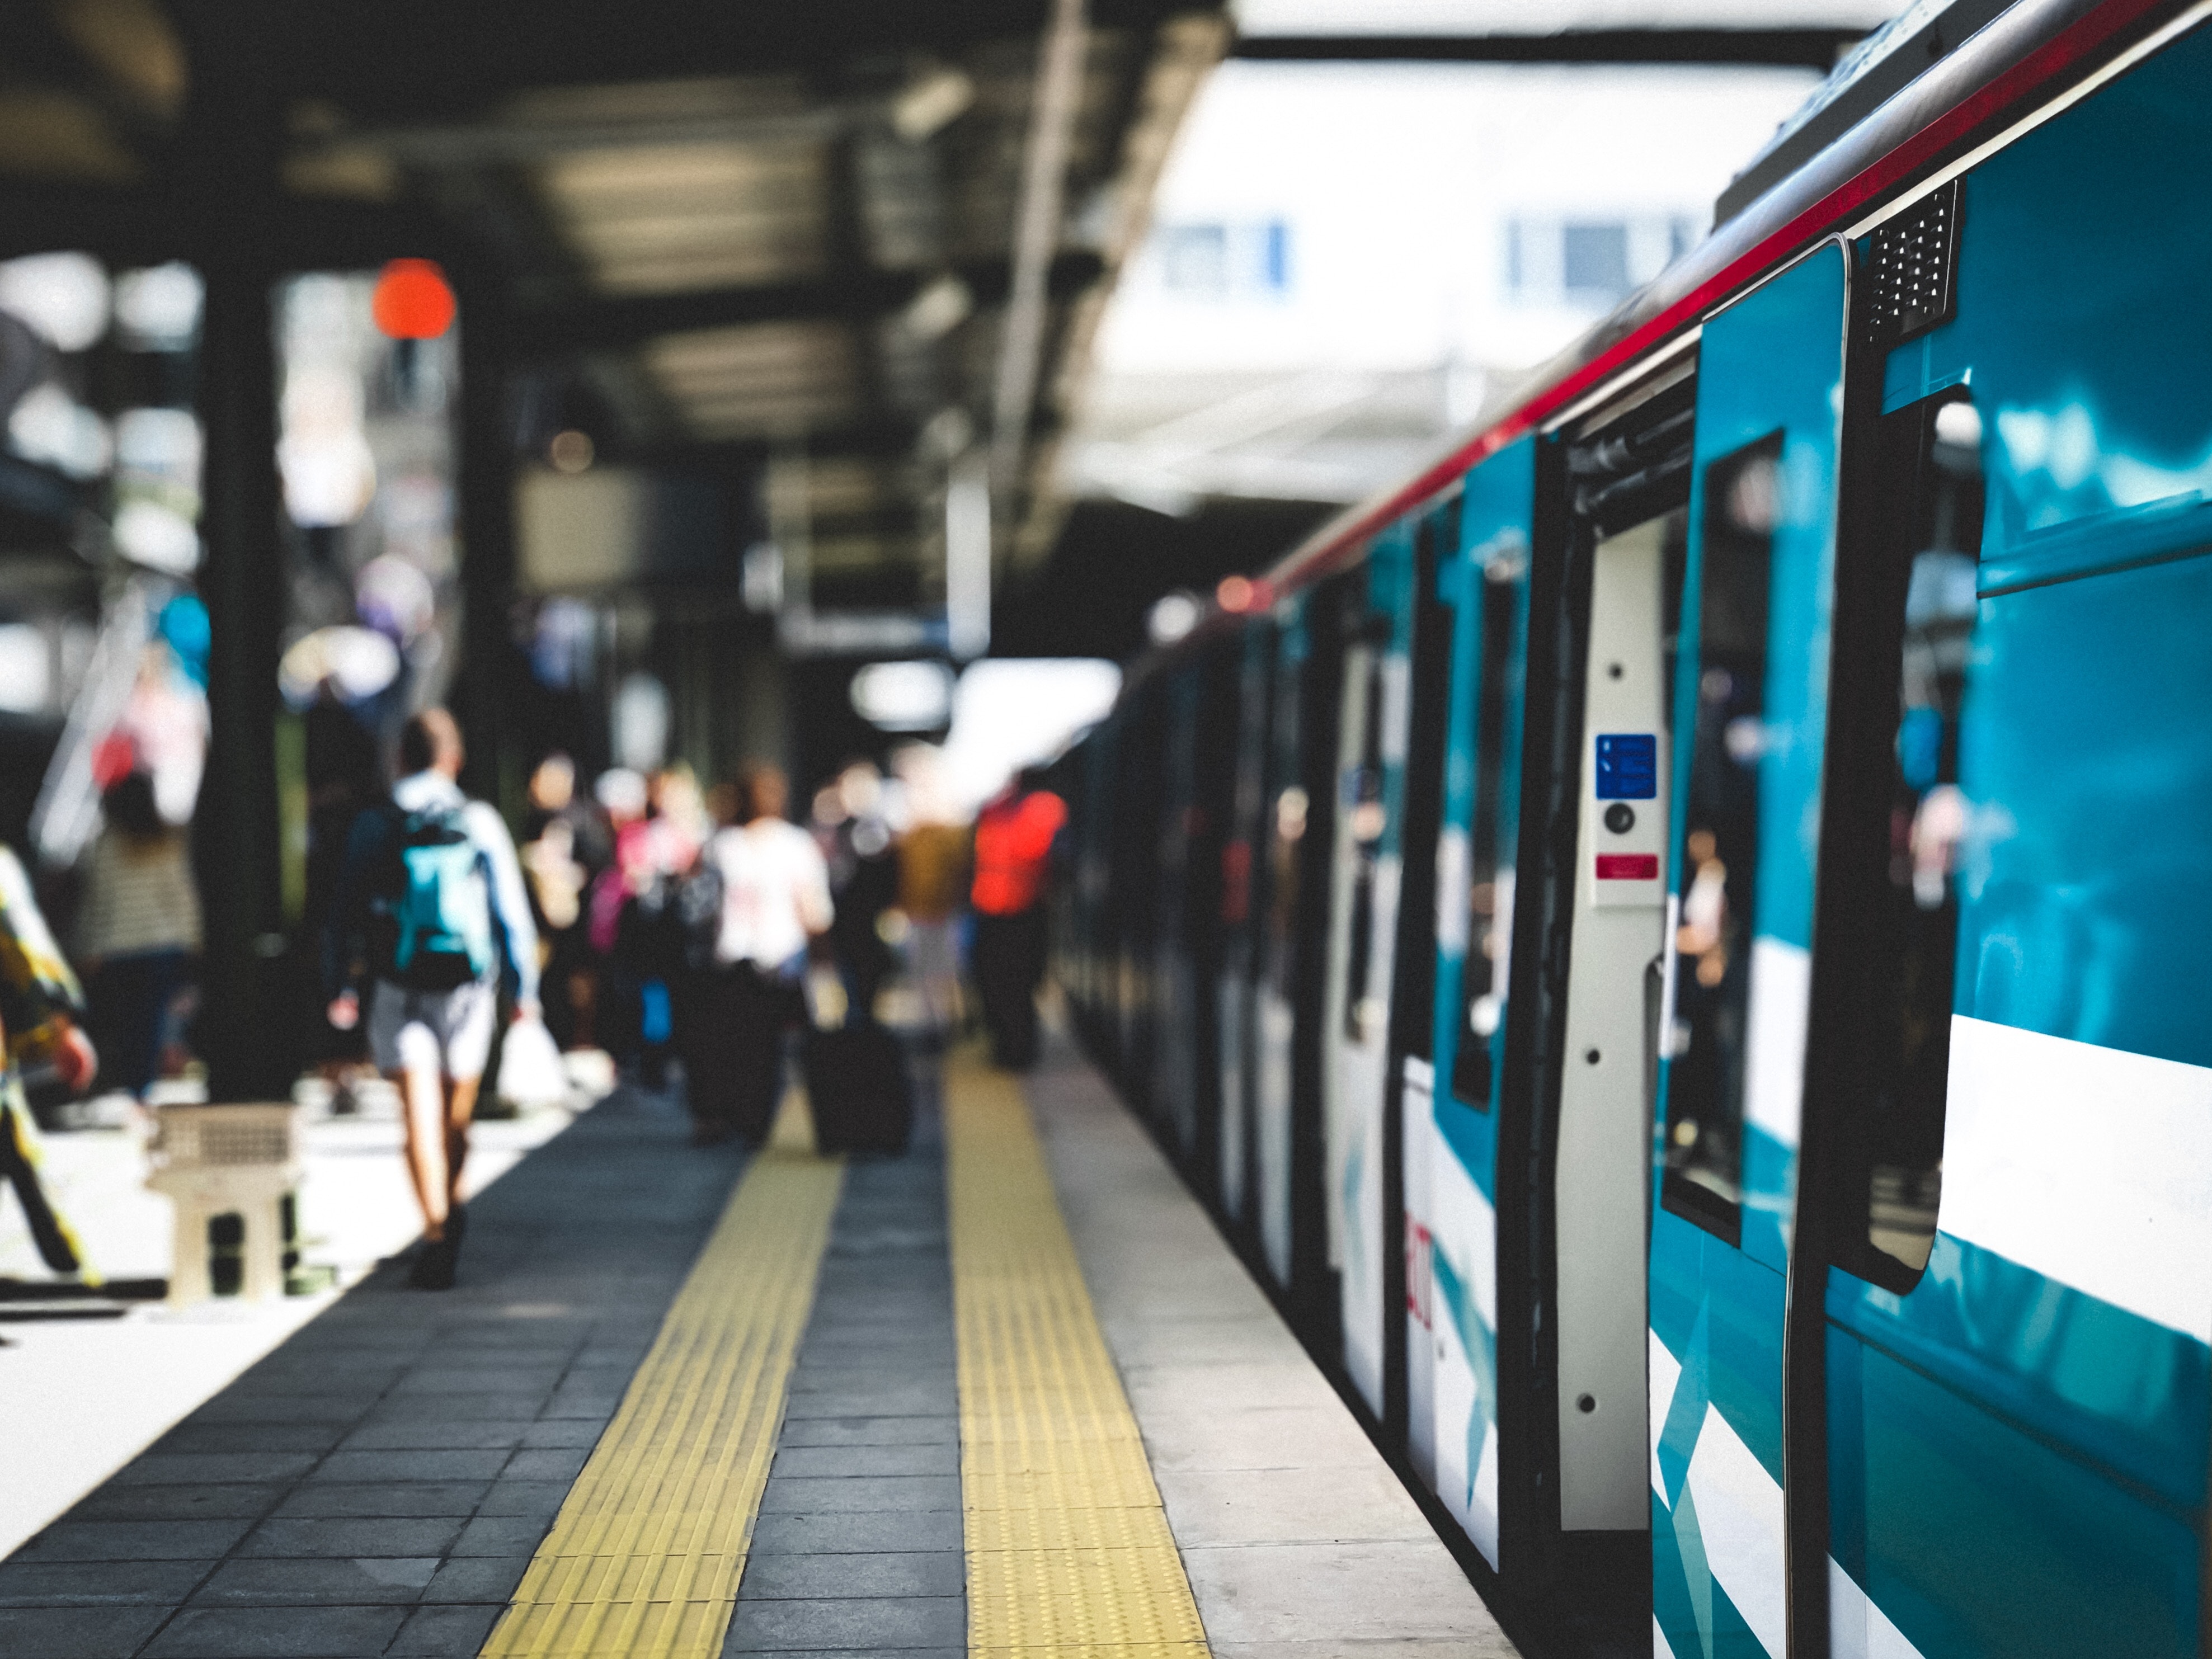 Improper MDMS regulation will fragment metropolitan public transport services